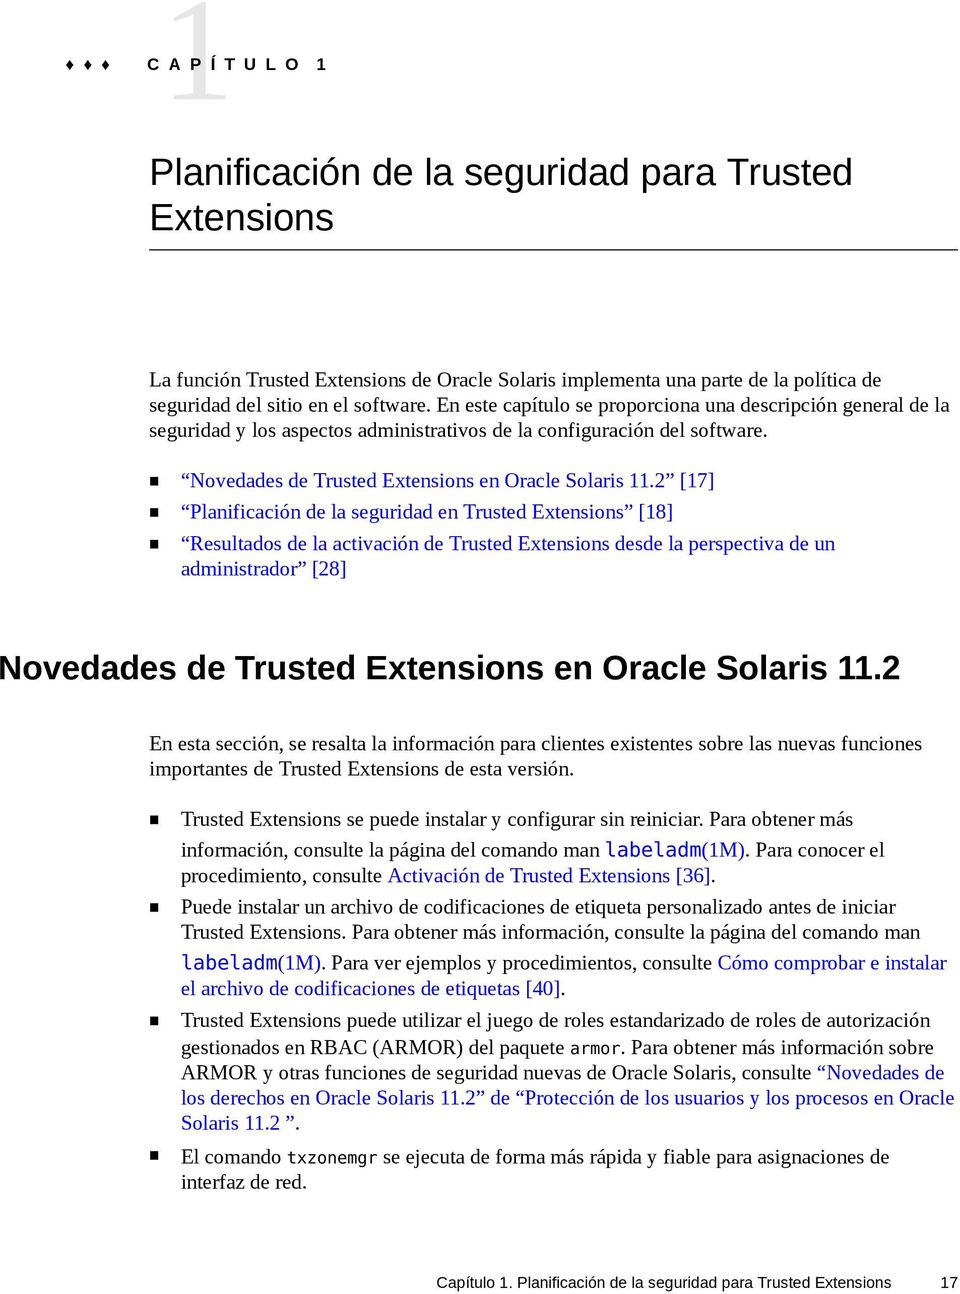 2 [17] Planificación de la seguridad en Trusted Extensions [18] Resultados de la activación de Trusted Extensions desde la perspectiva de un administrador [28] Novedades de Trusted Extensions en